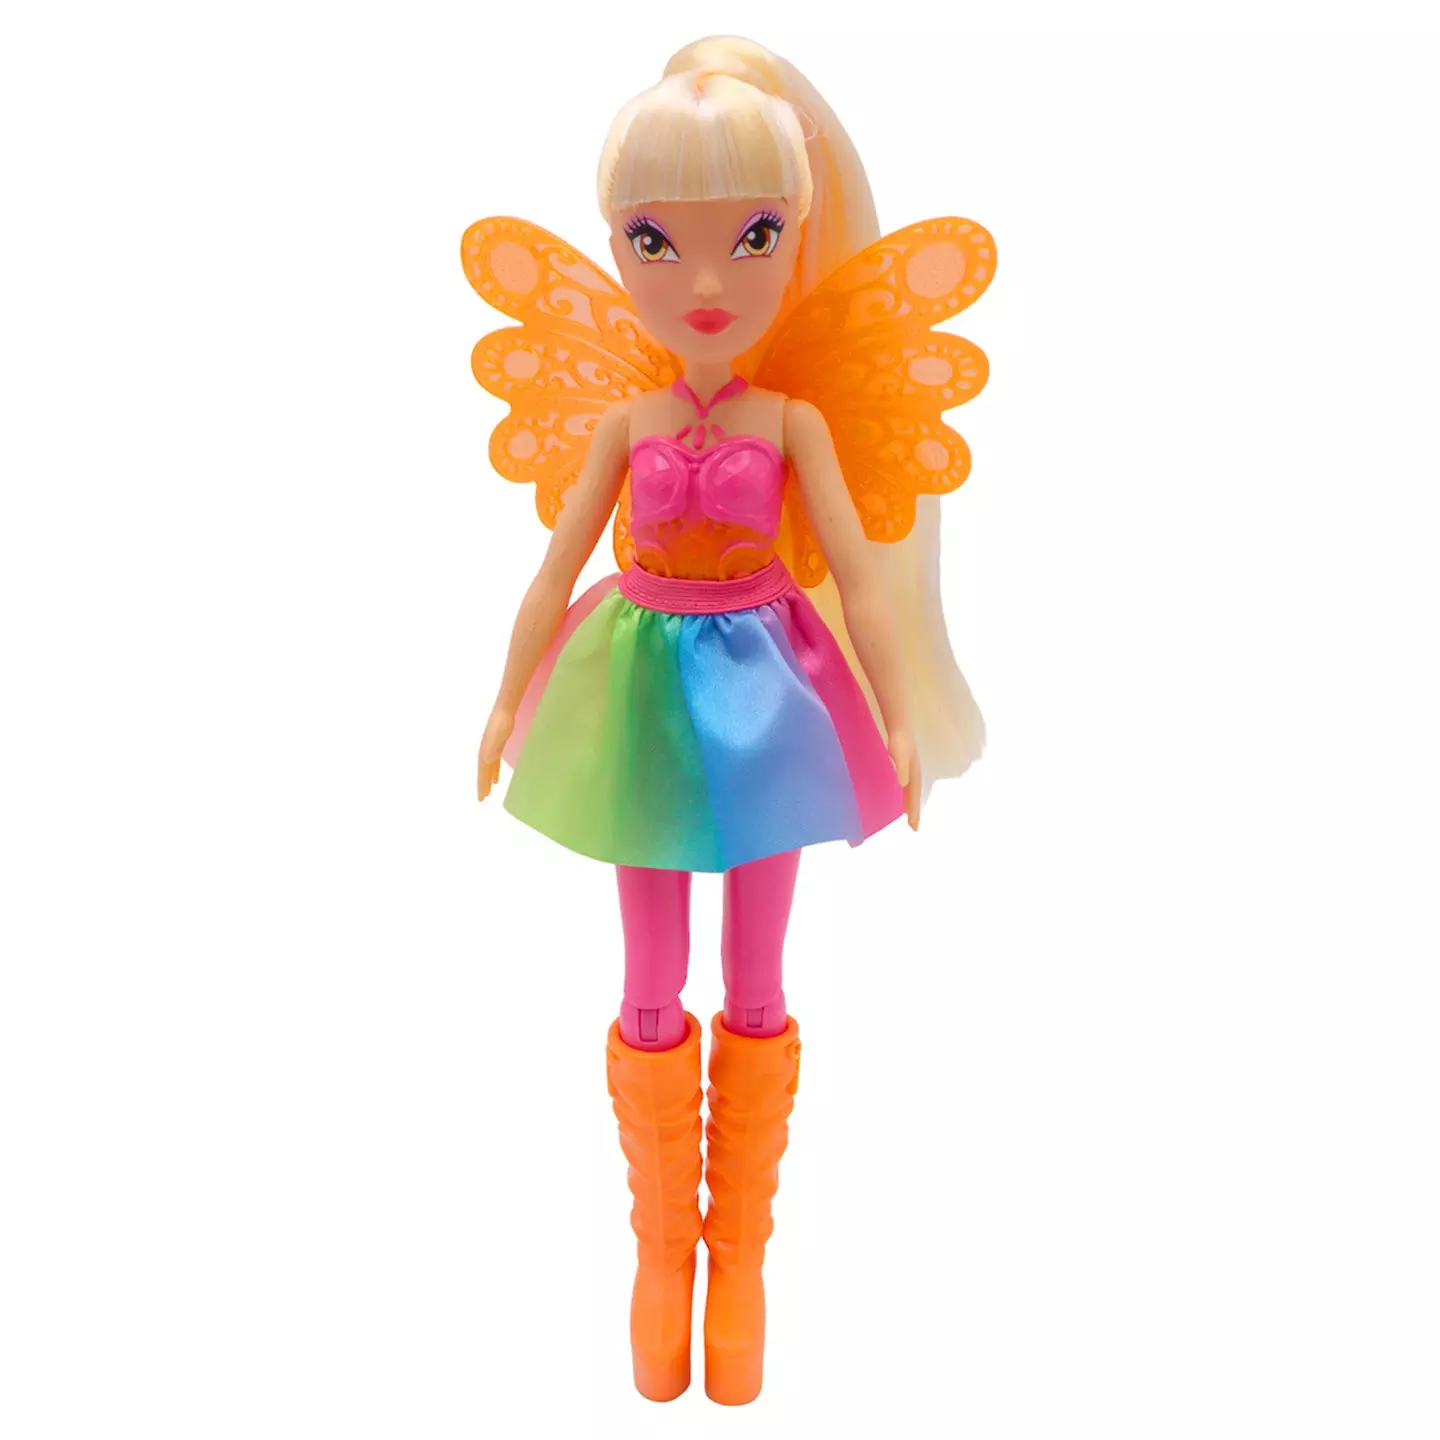 Кукла шарнирная Winx Club Hair Magic Стелла с крыльями и маркерами 2 шт 24 см IW01232103